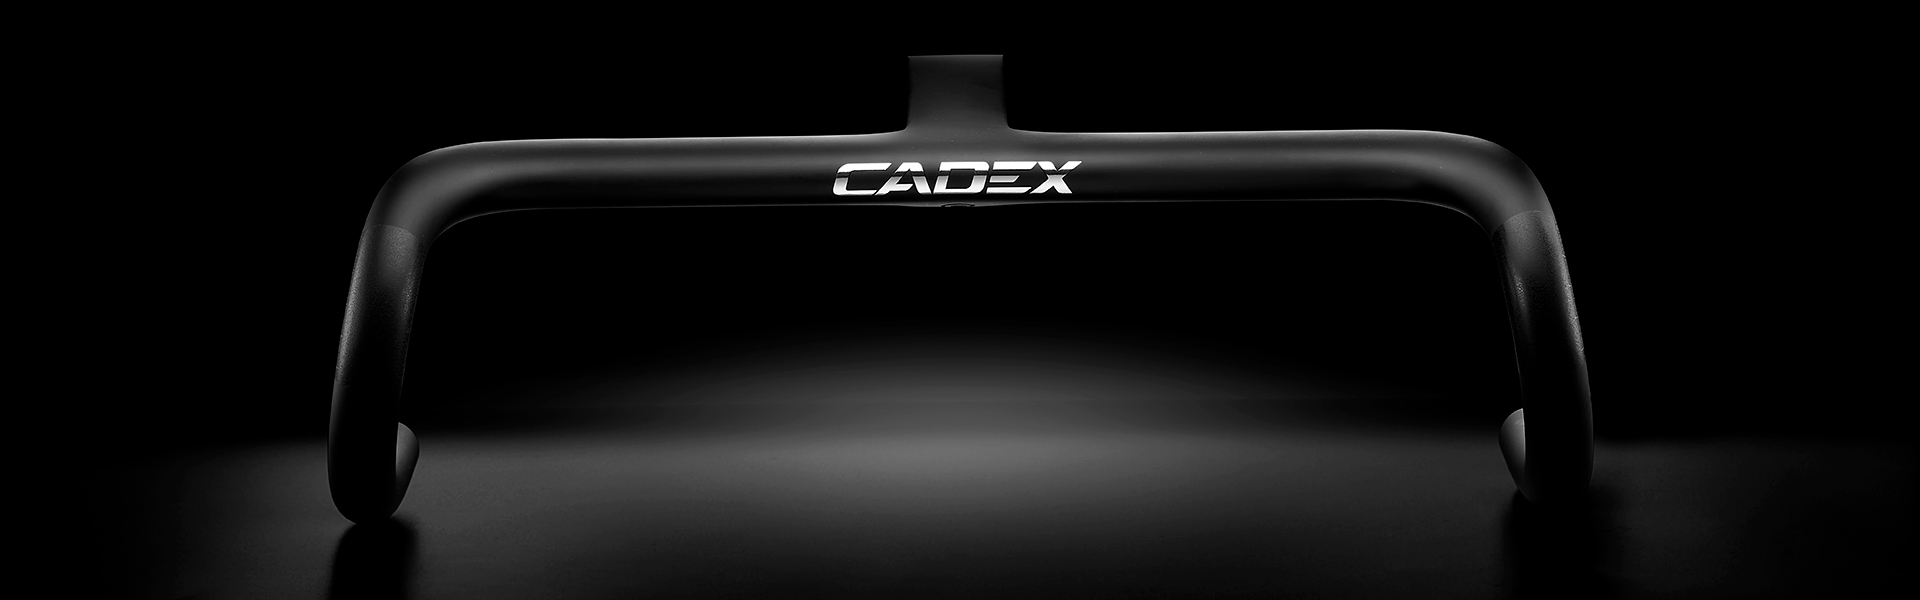 www.cadex-cycling.com